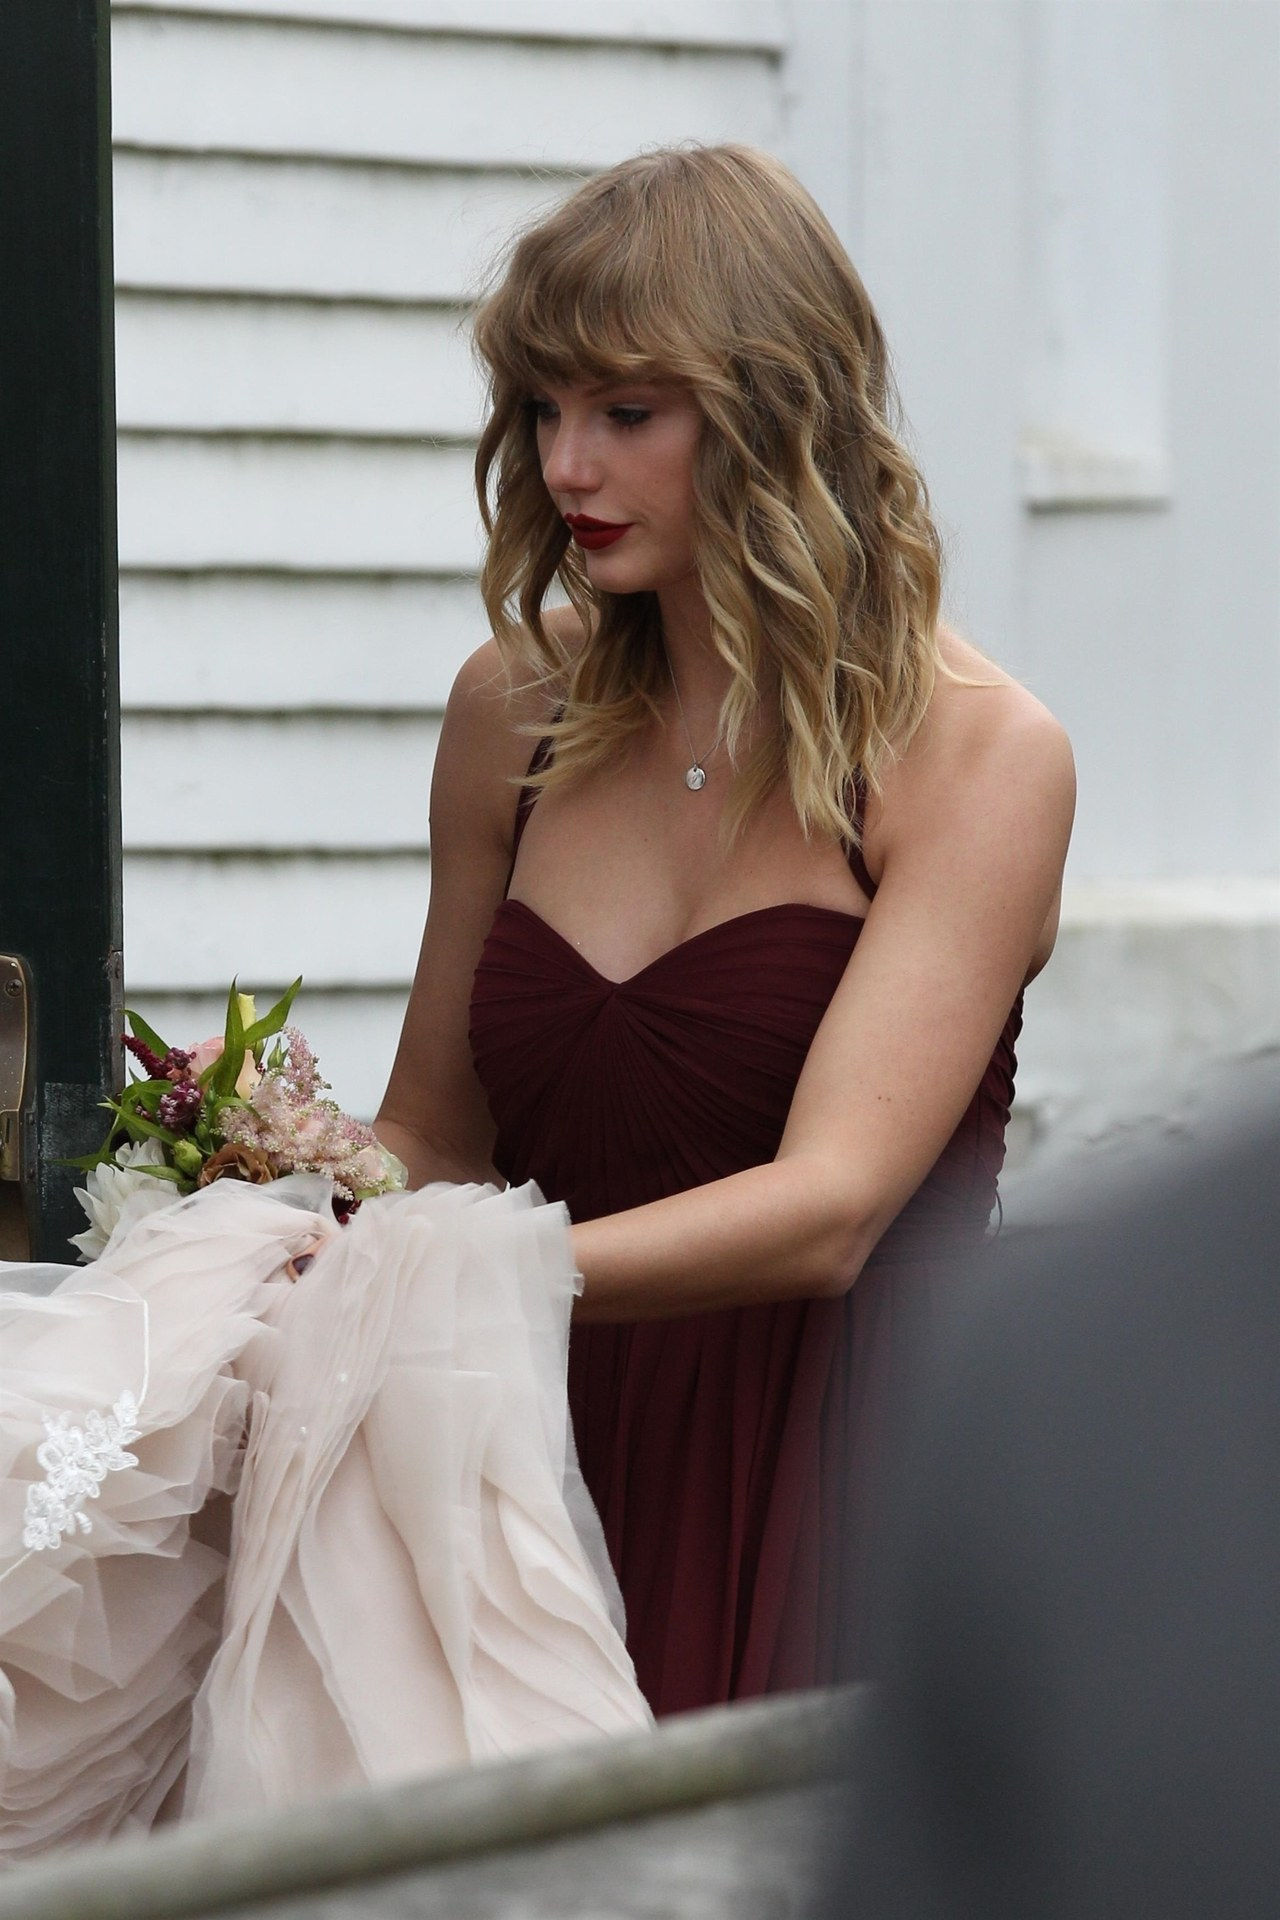 泰勒 Swift celebrated her bffs wedding at Martha's Vineyard